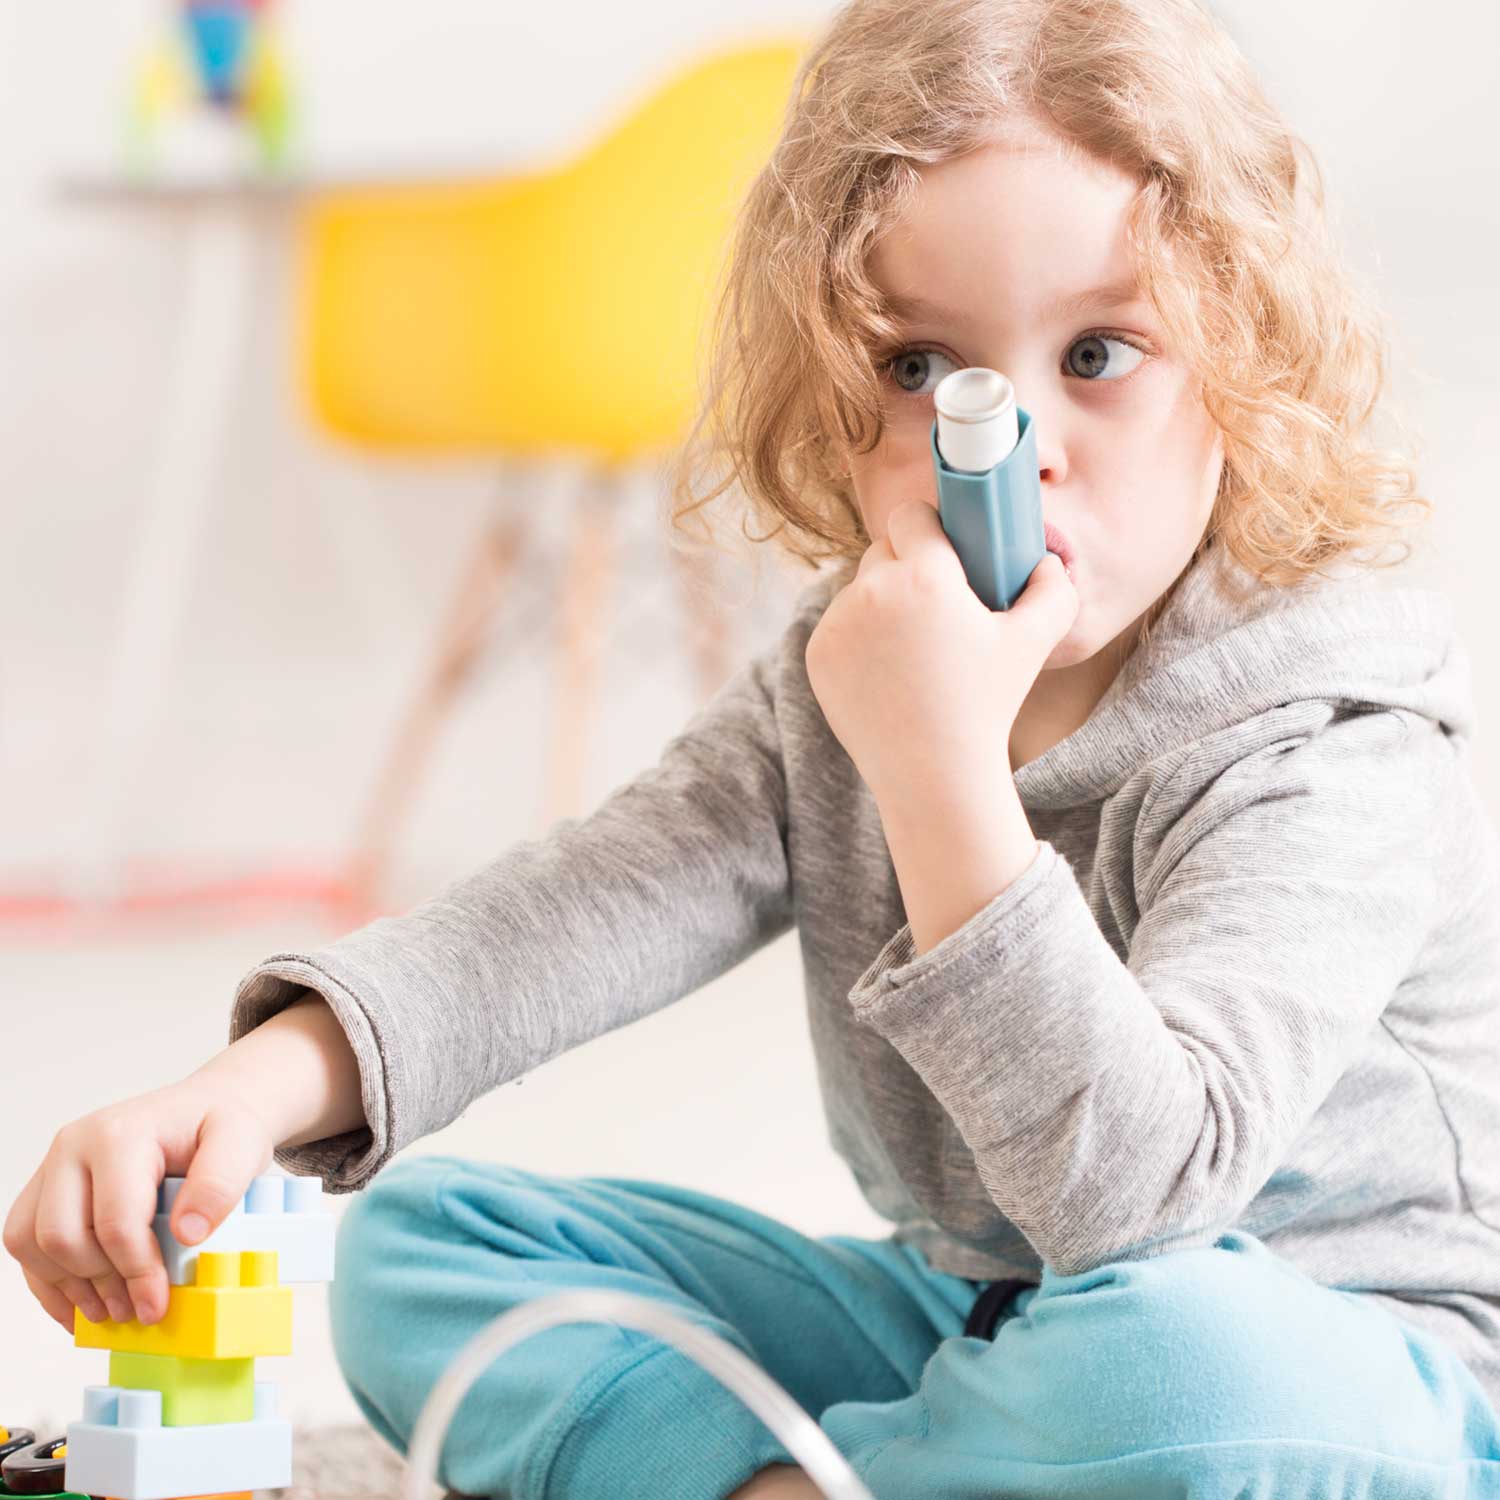 Asthma study smart inhalers WIDGET^empty:{ds__assetid^as_asset:asset_name}